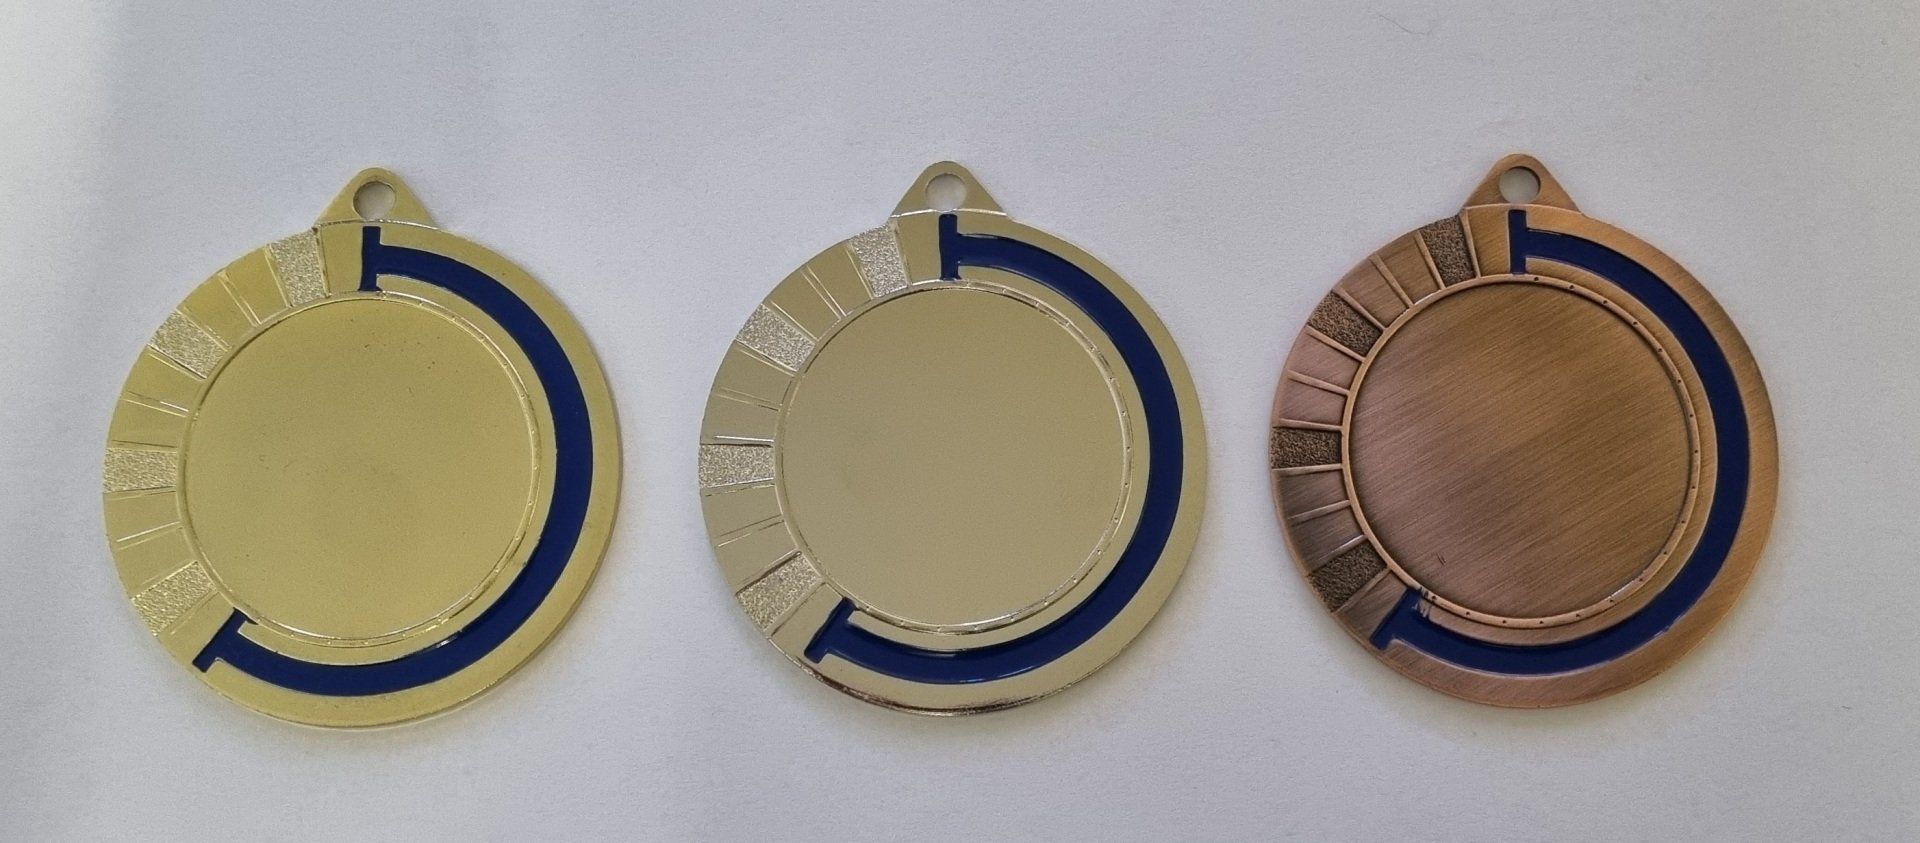 Medaillen gold silber bronze